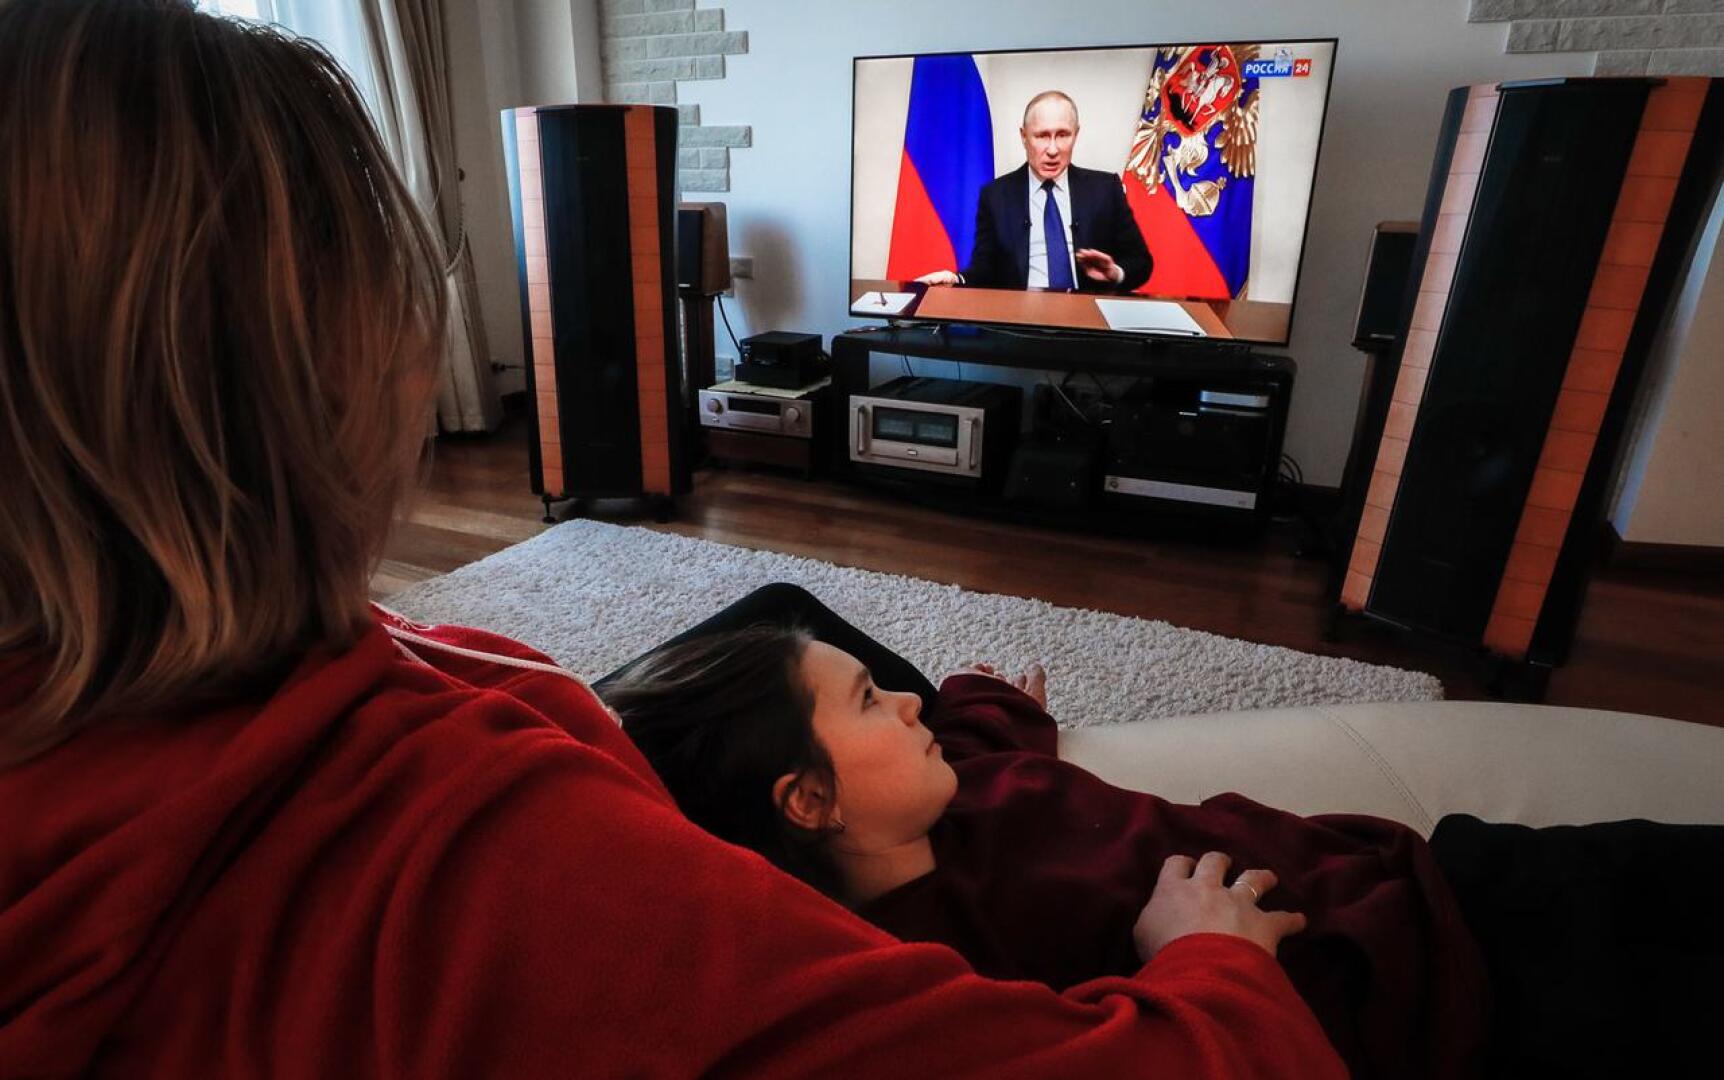 Venäläisperhe seurasi presidentti Vladimir Putinin puhetta television välityksellä keskiviikkona Domodedovon kaupungissa Venäjällä.